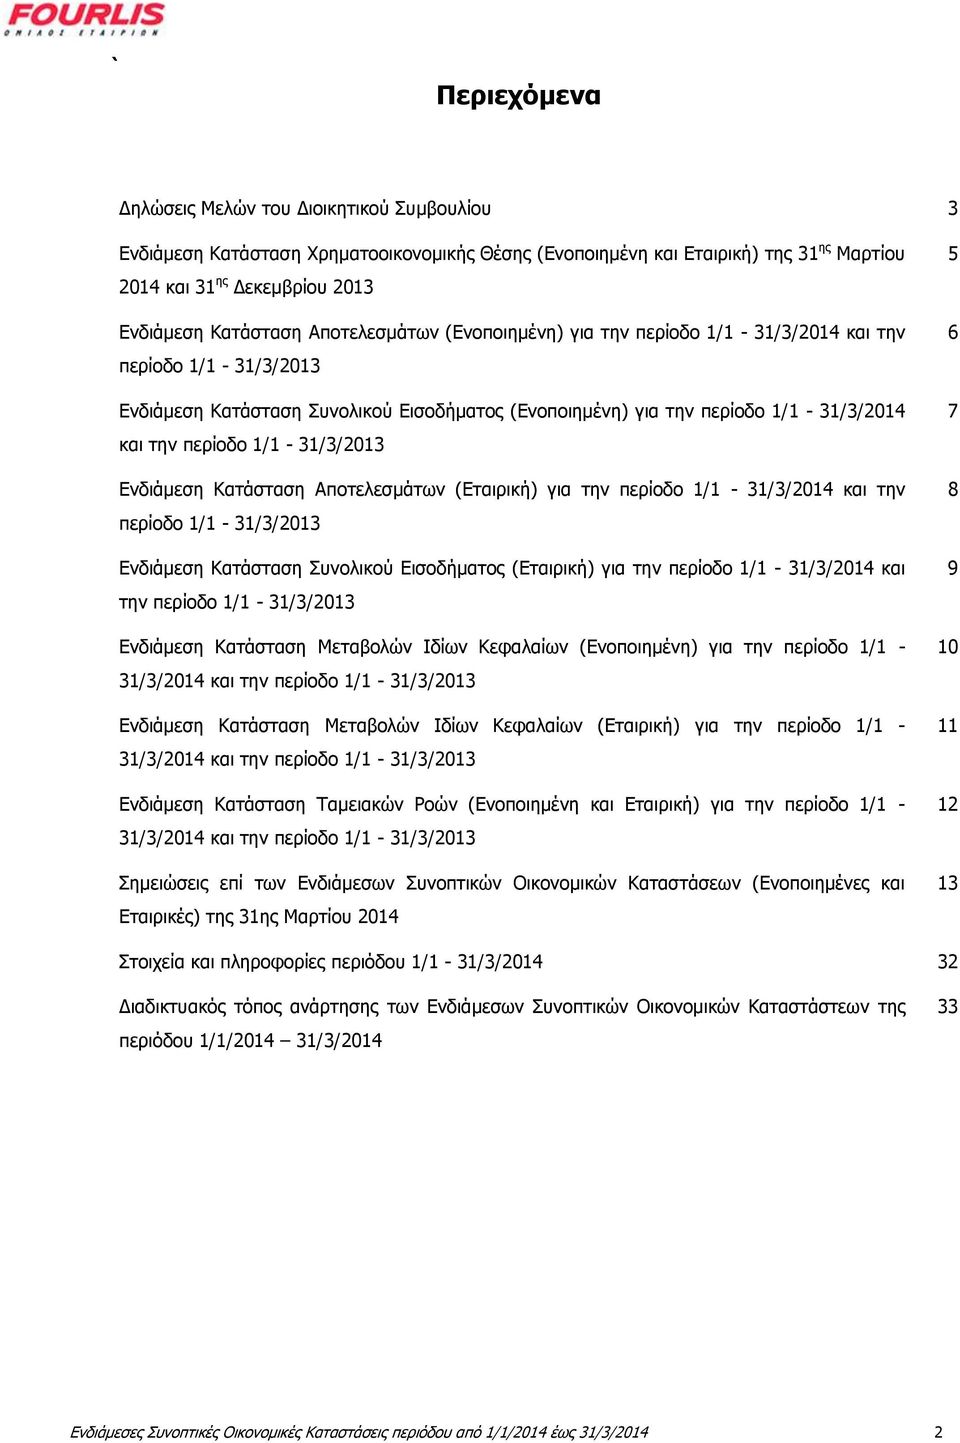 1/1-31/3/2013 Ενδιάμεση Κατάσταση Αποτελεσμάτων (Εταιρική) για την περίοδο 1/1-31/3/2014 και την περίοδο 1/1-31/3/2013 Ενδιάμεση Κατάσταση Συνολικού Εισοδήματος (Εταιρική) για την περίοδο